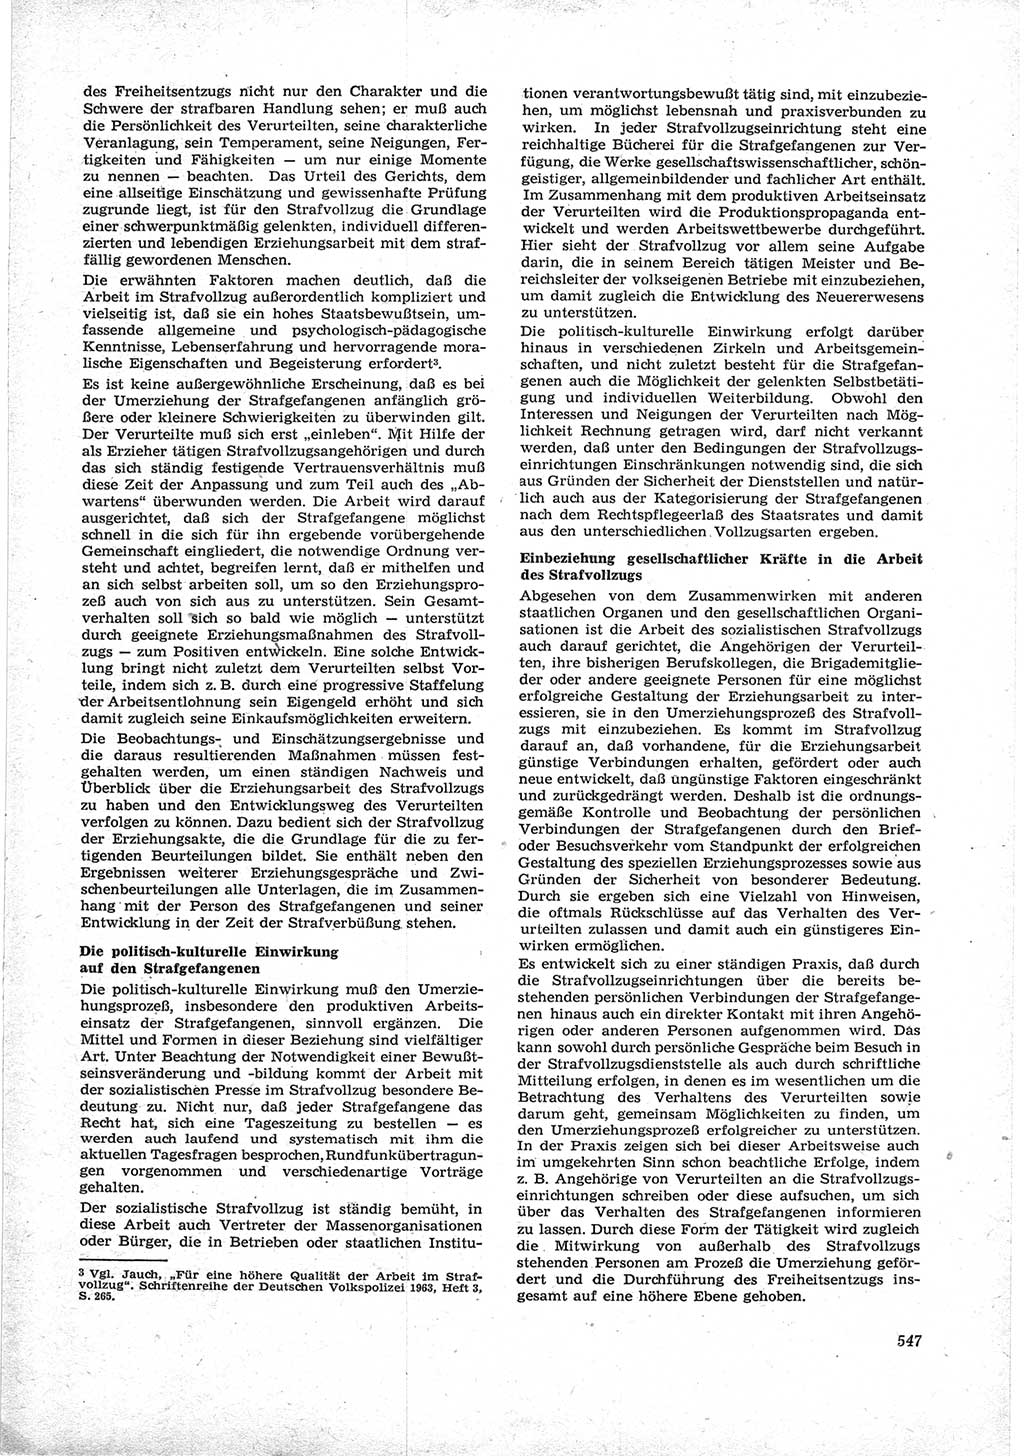 Neue Justiz (NJ), Zeitschrift für Recht und Rechtswissenschaft [Deutsche Demokratische Republik (DDR)], 17. Jahrgang 1963, Seite 547 (NJ DDR 1963, S. 547)